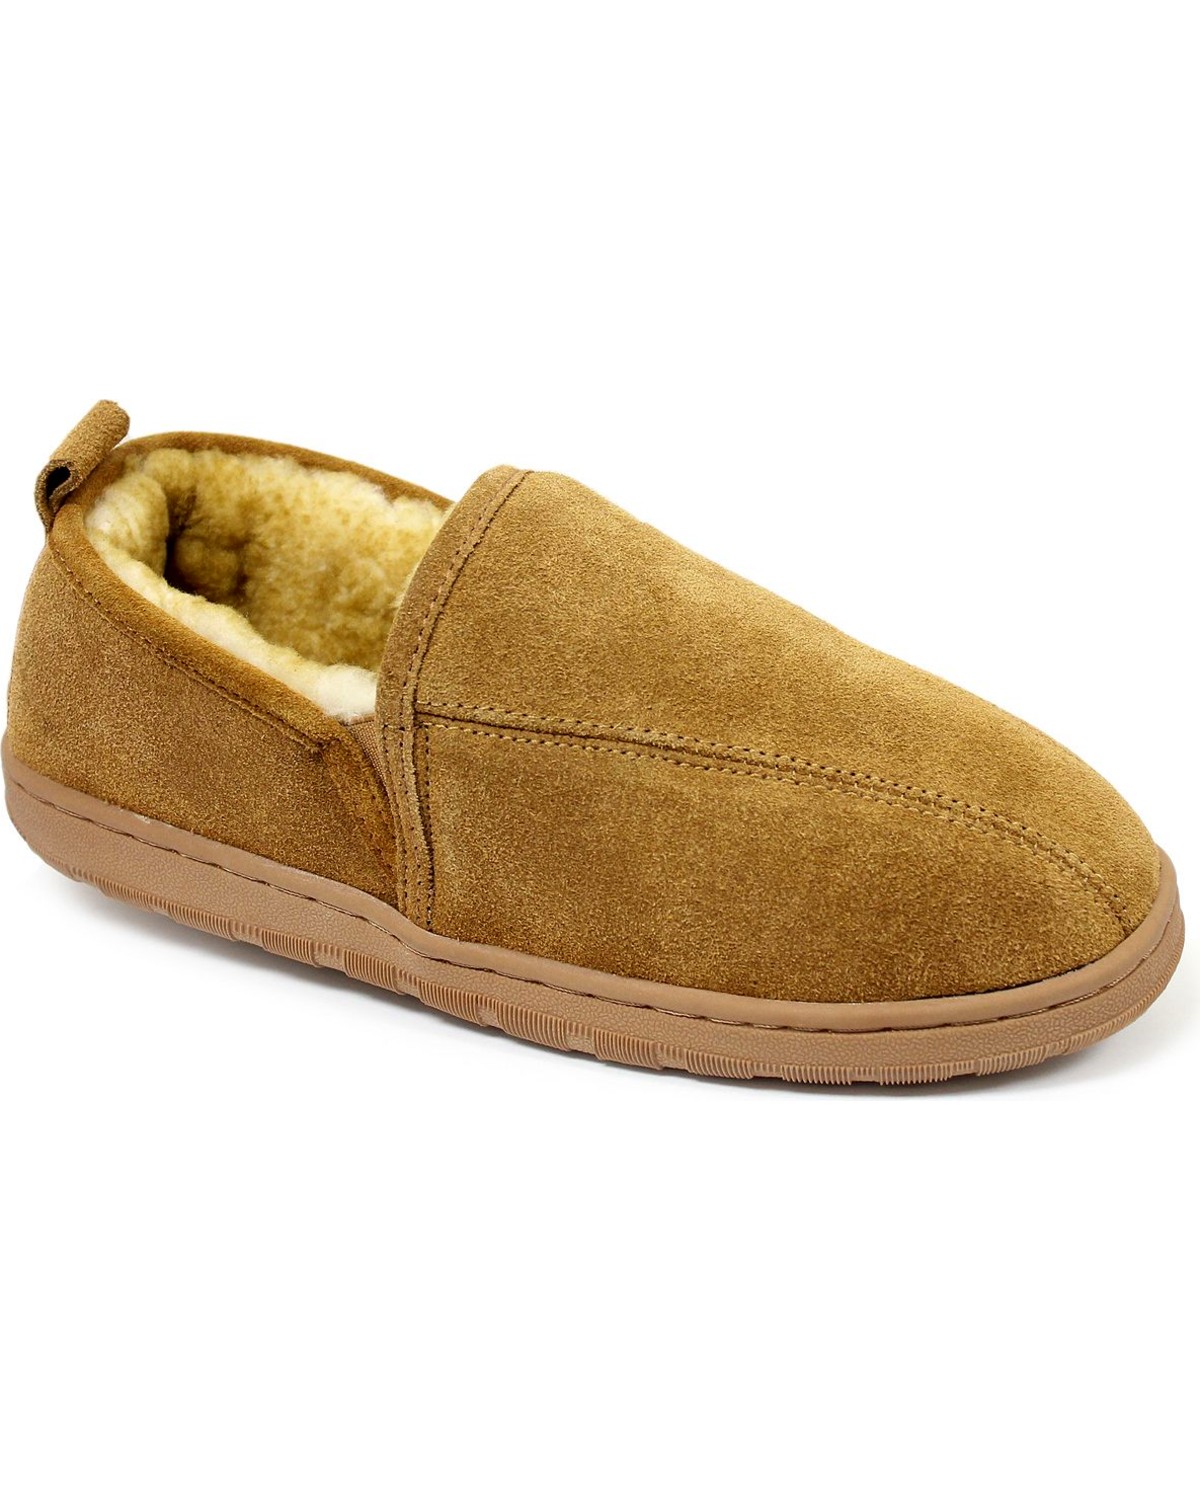 Lamo Footwear Men's Classic Romeo Slippers | Boot Barn